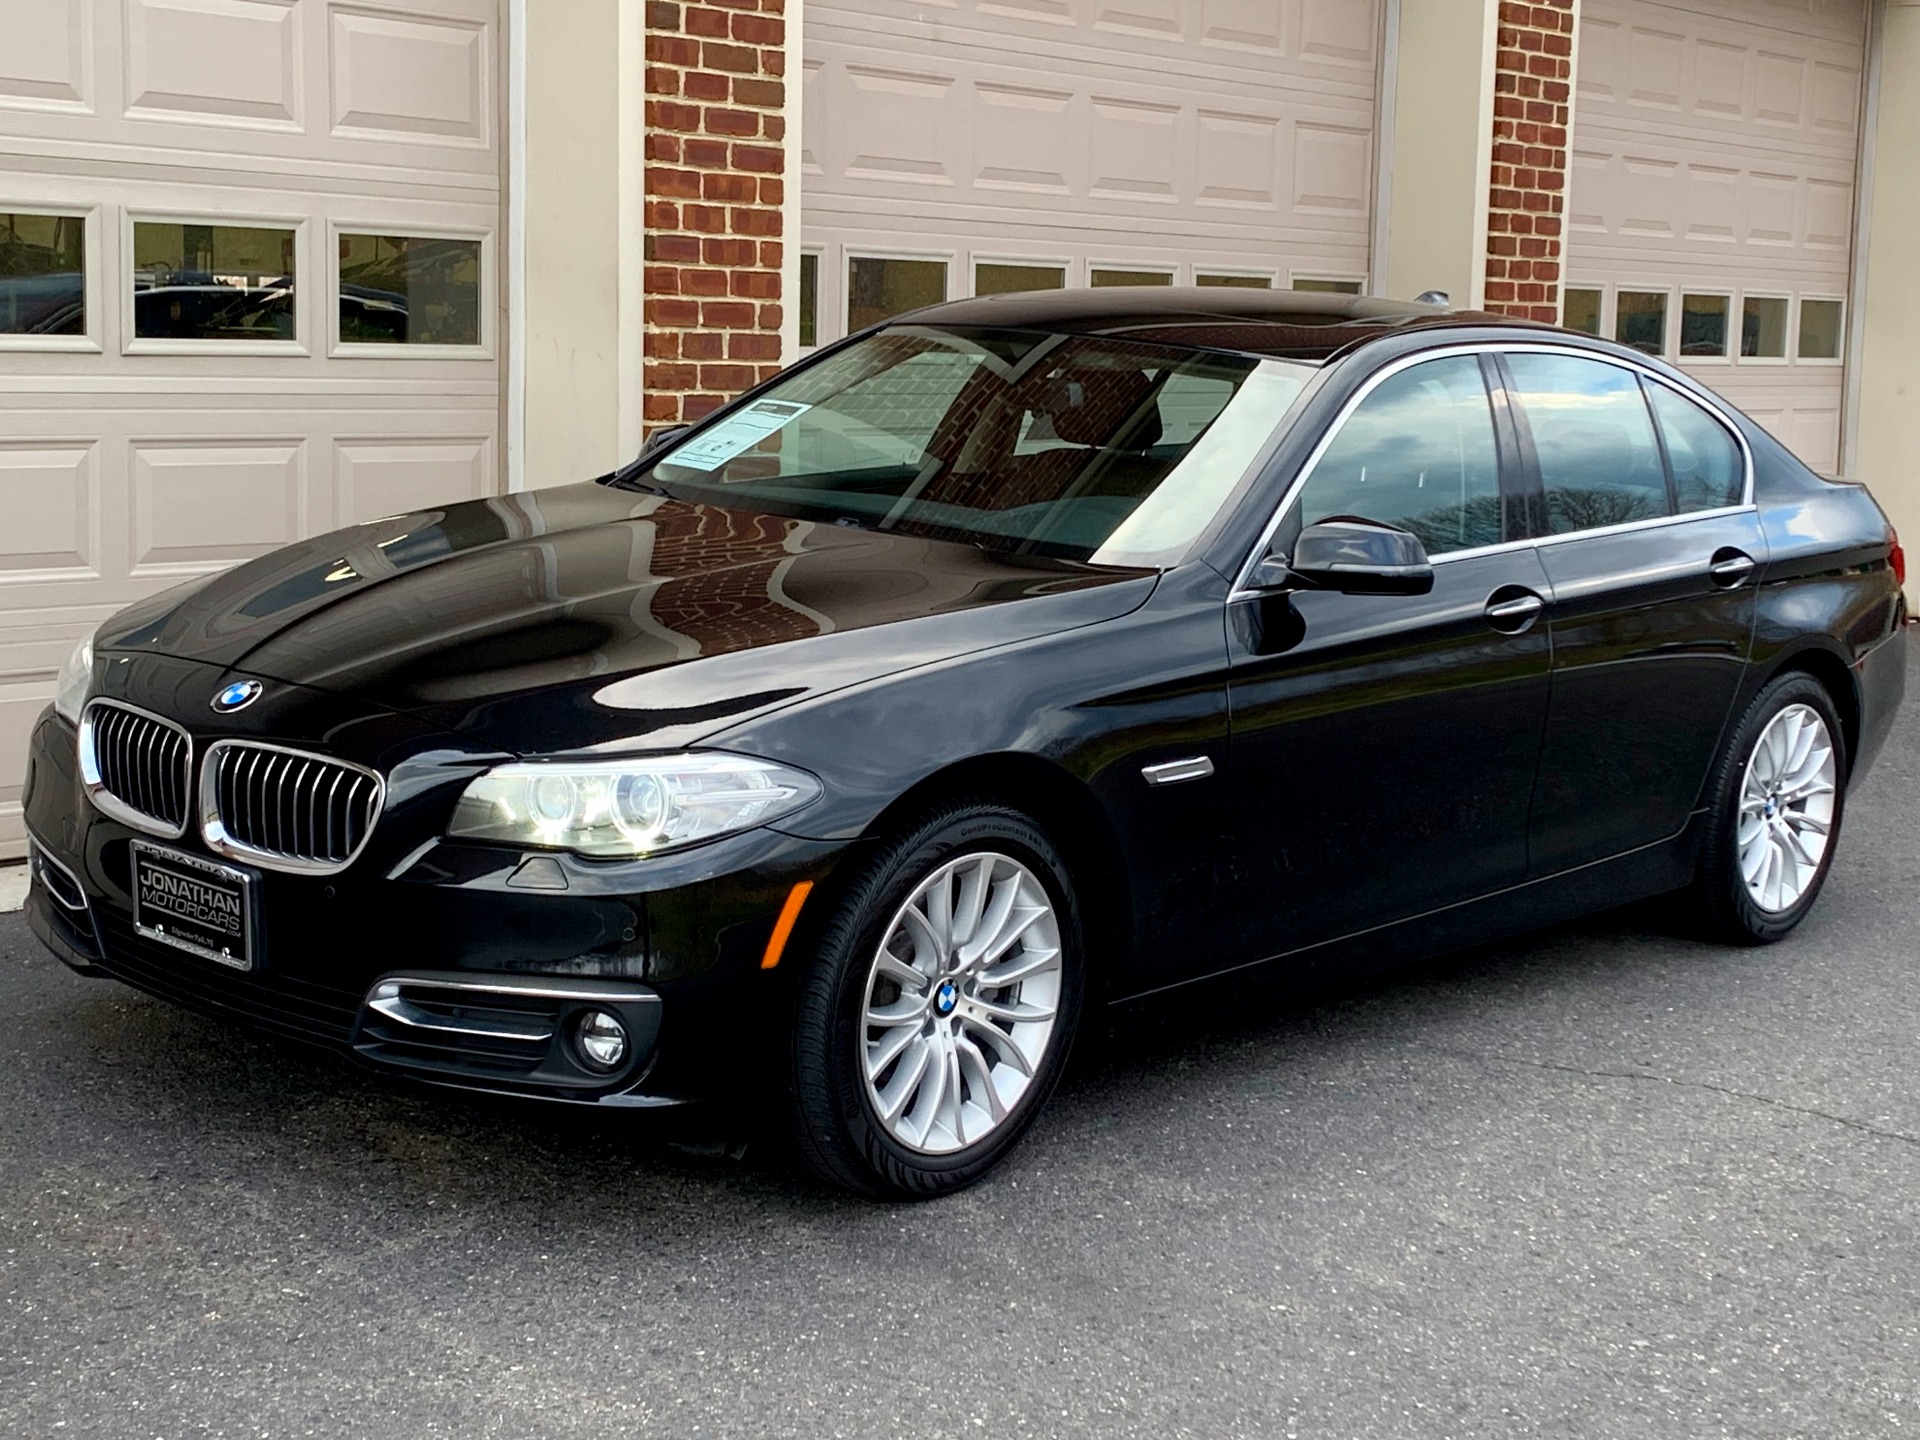 BMW 5 Series 528i xDrive Luxury Line Stock # 146560 for sale near Edgewater Park, NJ | NJ BMW Dealer